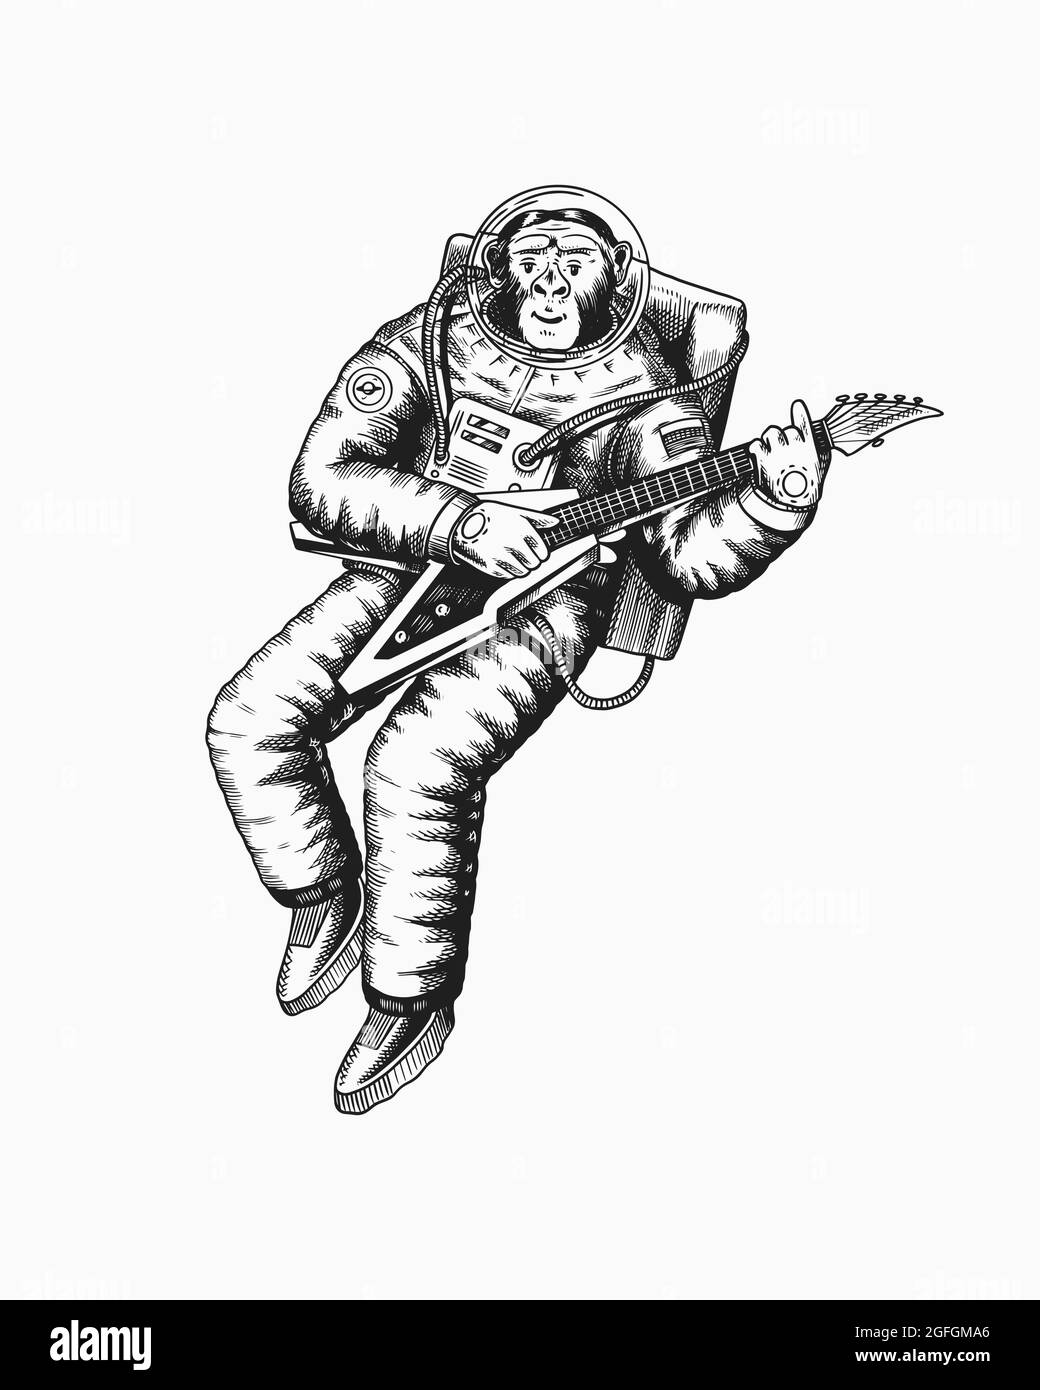 Monkey astronaute joue la guitare électrique. Chimpanzé cosmonaute cosmonaute. Animal à la mode. Ancien croquis monochrome gravé à la main Illustration de Vecteur